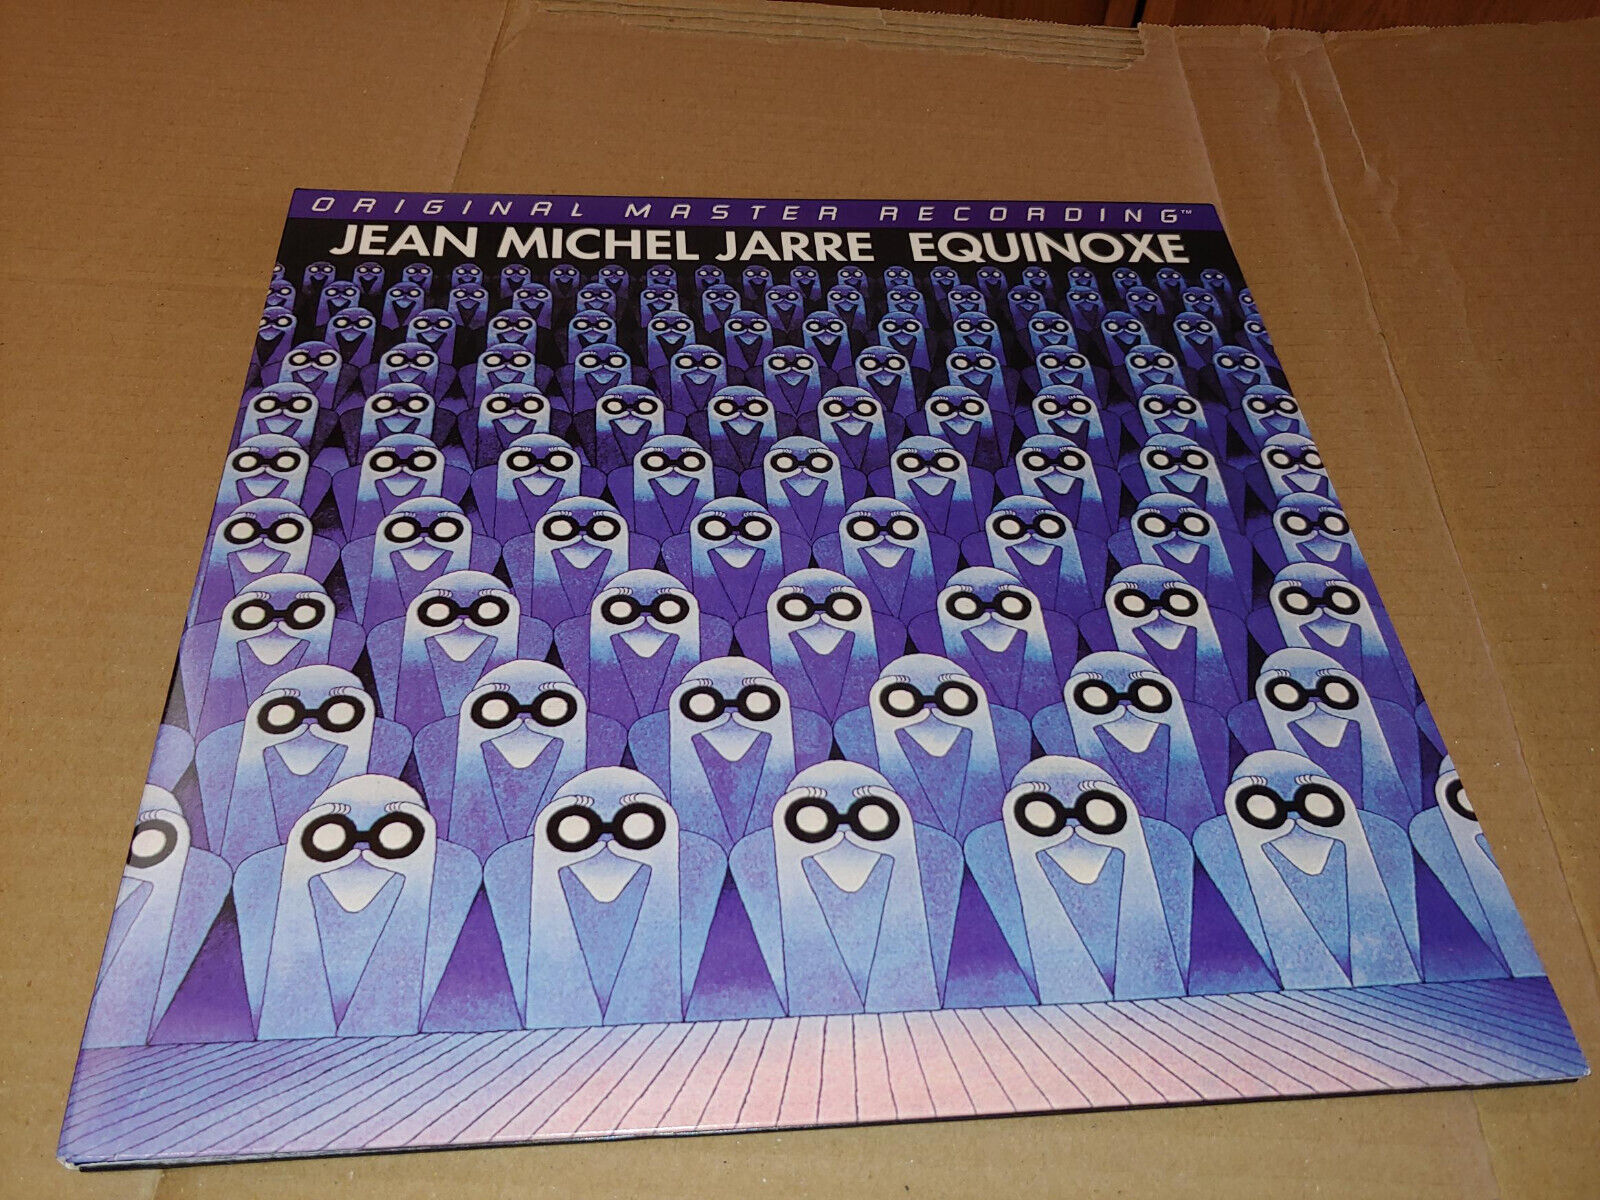 Jean Michel Jarre Equinoxe Vinyl MOFI Original Master Recording